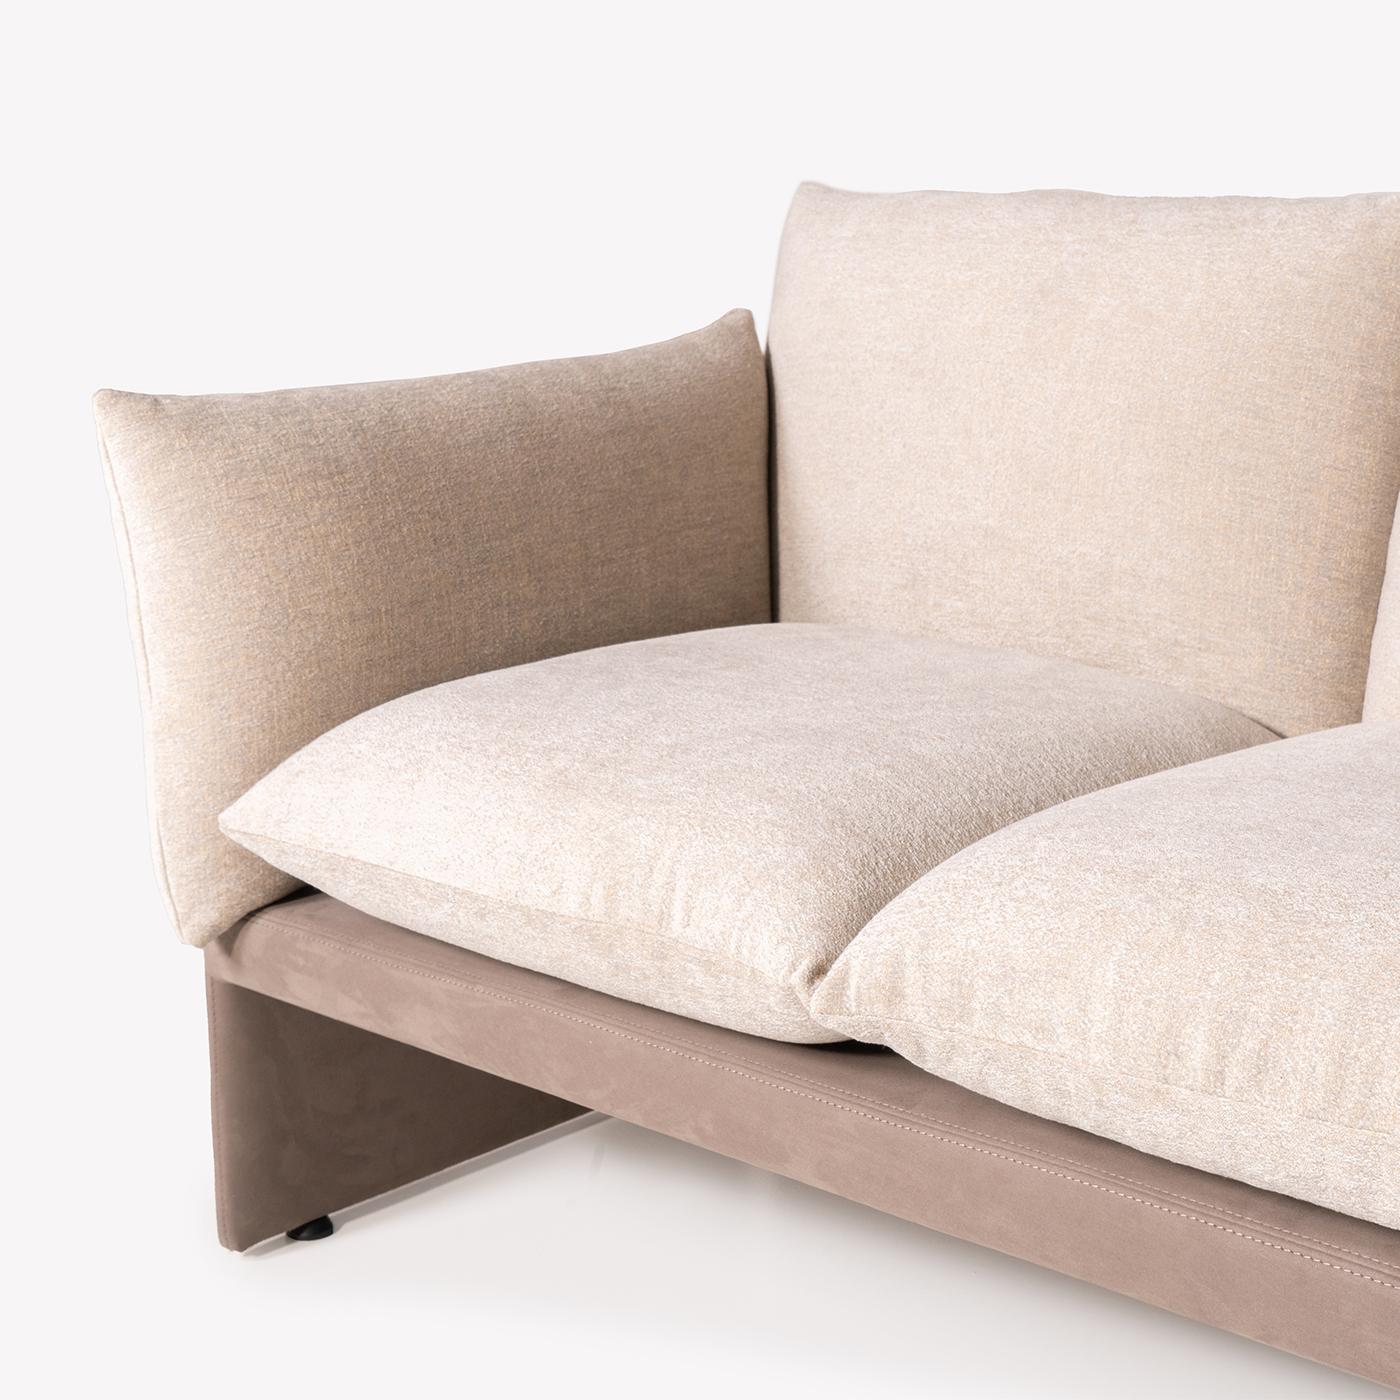 Farfalle aus der Tribeca Collection ist ein wunderschönes, sehr bequemes, handgefertigtes Sofa mit einer ganz besonderen Struktur, die aus jedem Blickwinkel betrachtet werden kann. Das Design dieses modularen Sofas geht auf die 70er und 80er Jahre